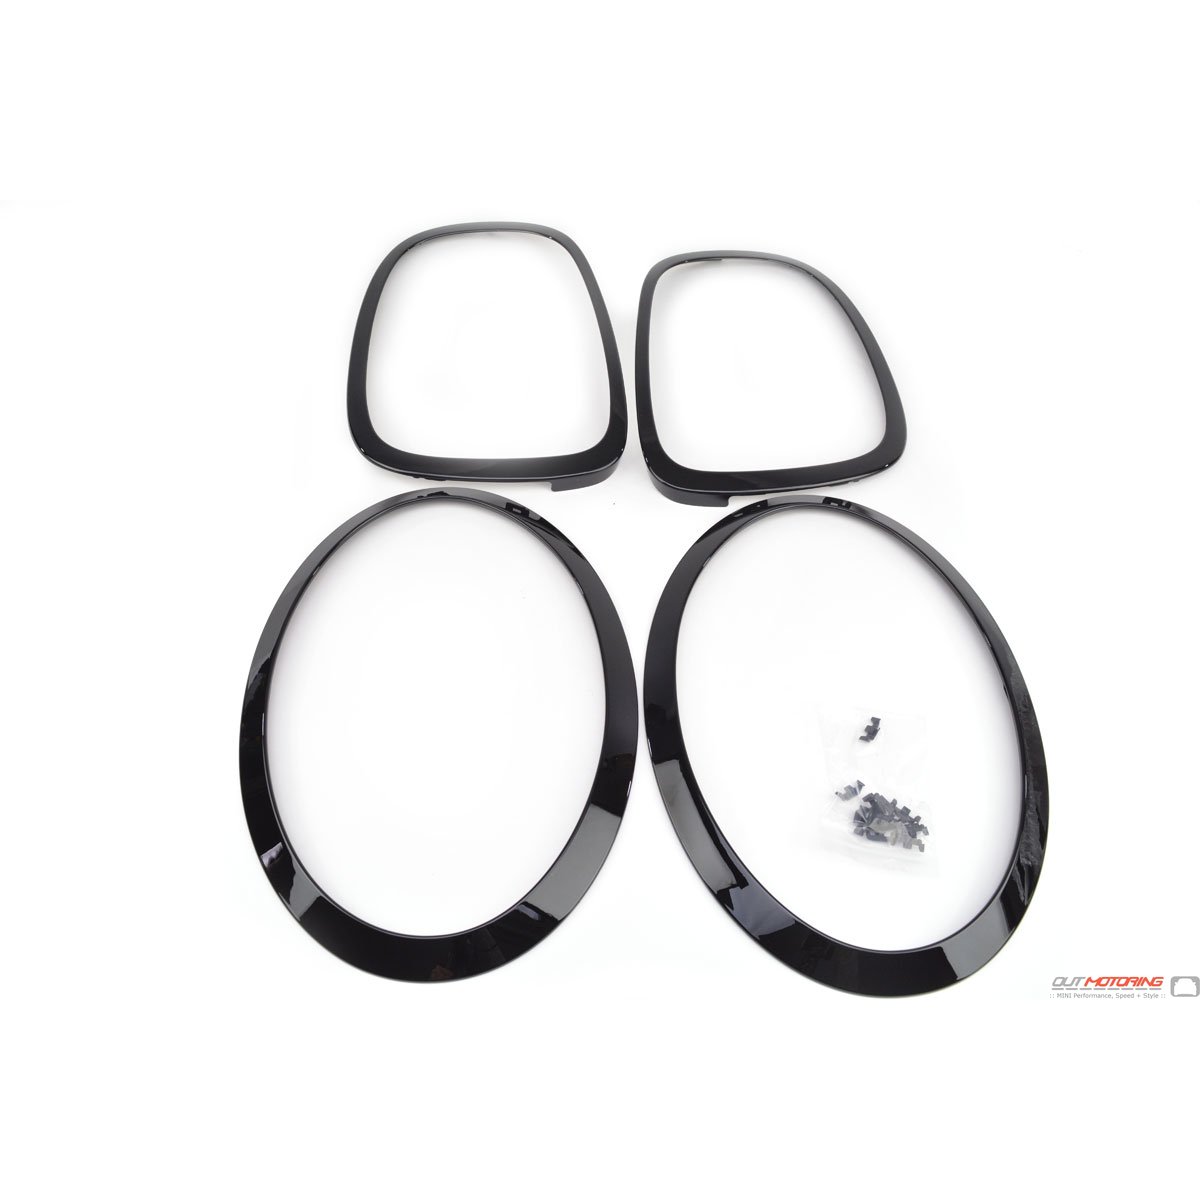 QIDIAN For Mini Cooper F56 F55 Car Headlight Front Head Tail Trim Rear Lamp Decoration Sticker Ring For MINI F56 For MINI Cooper Accessories 2PCSForHeadlight Black